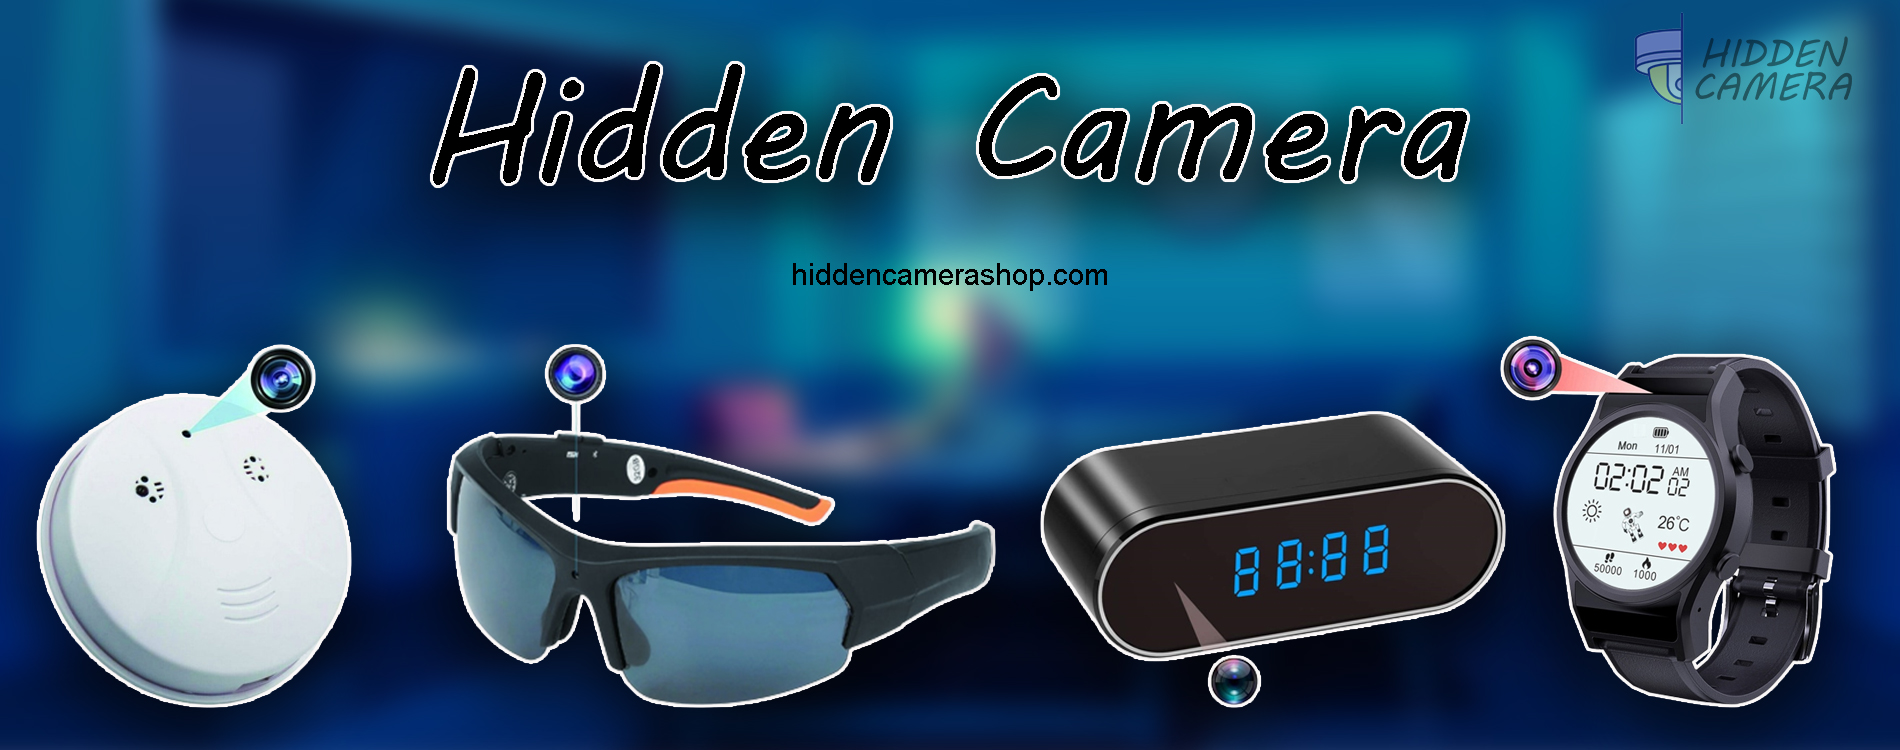 hidden camera banner 2 - Hidden Camera